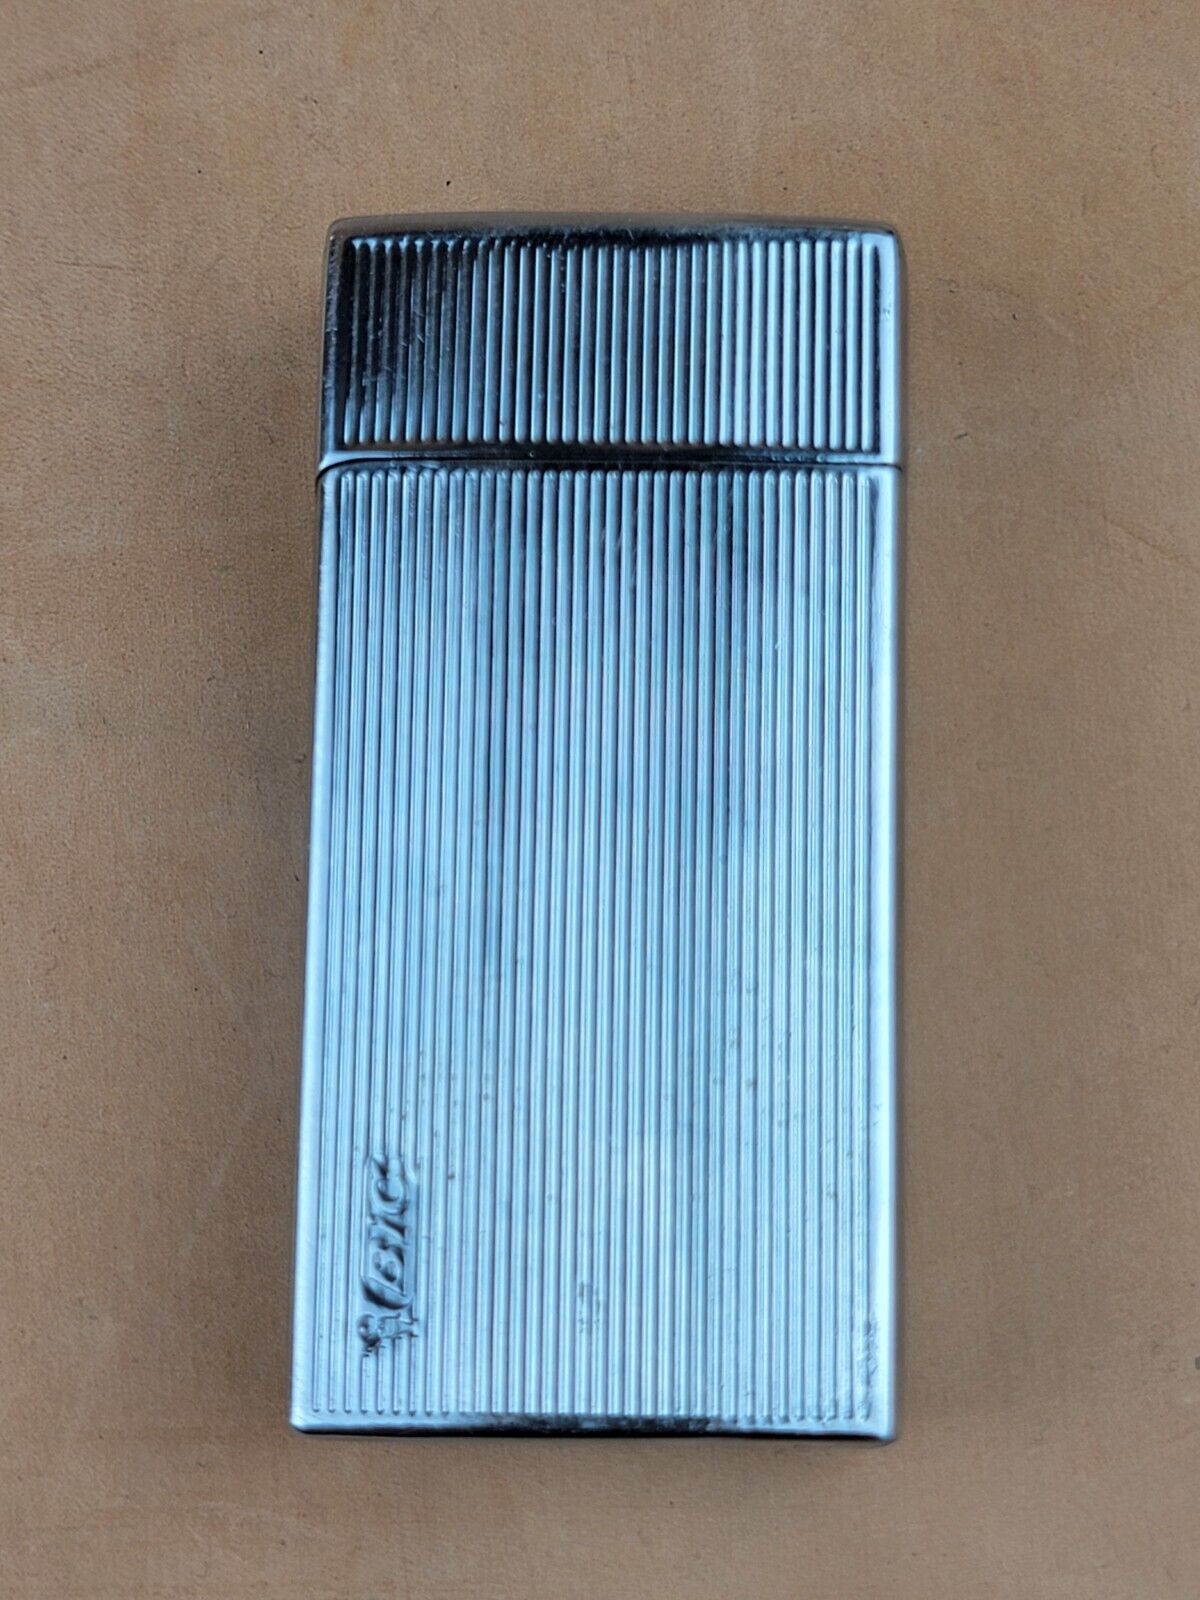 Vintage Mini Bic Metal Lighter Case Aluminum Holder For Lighter 